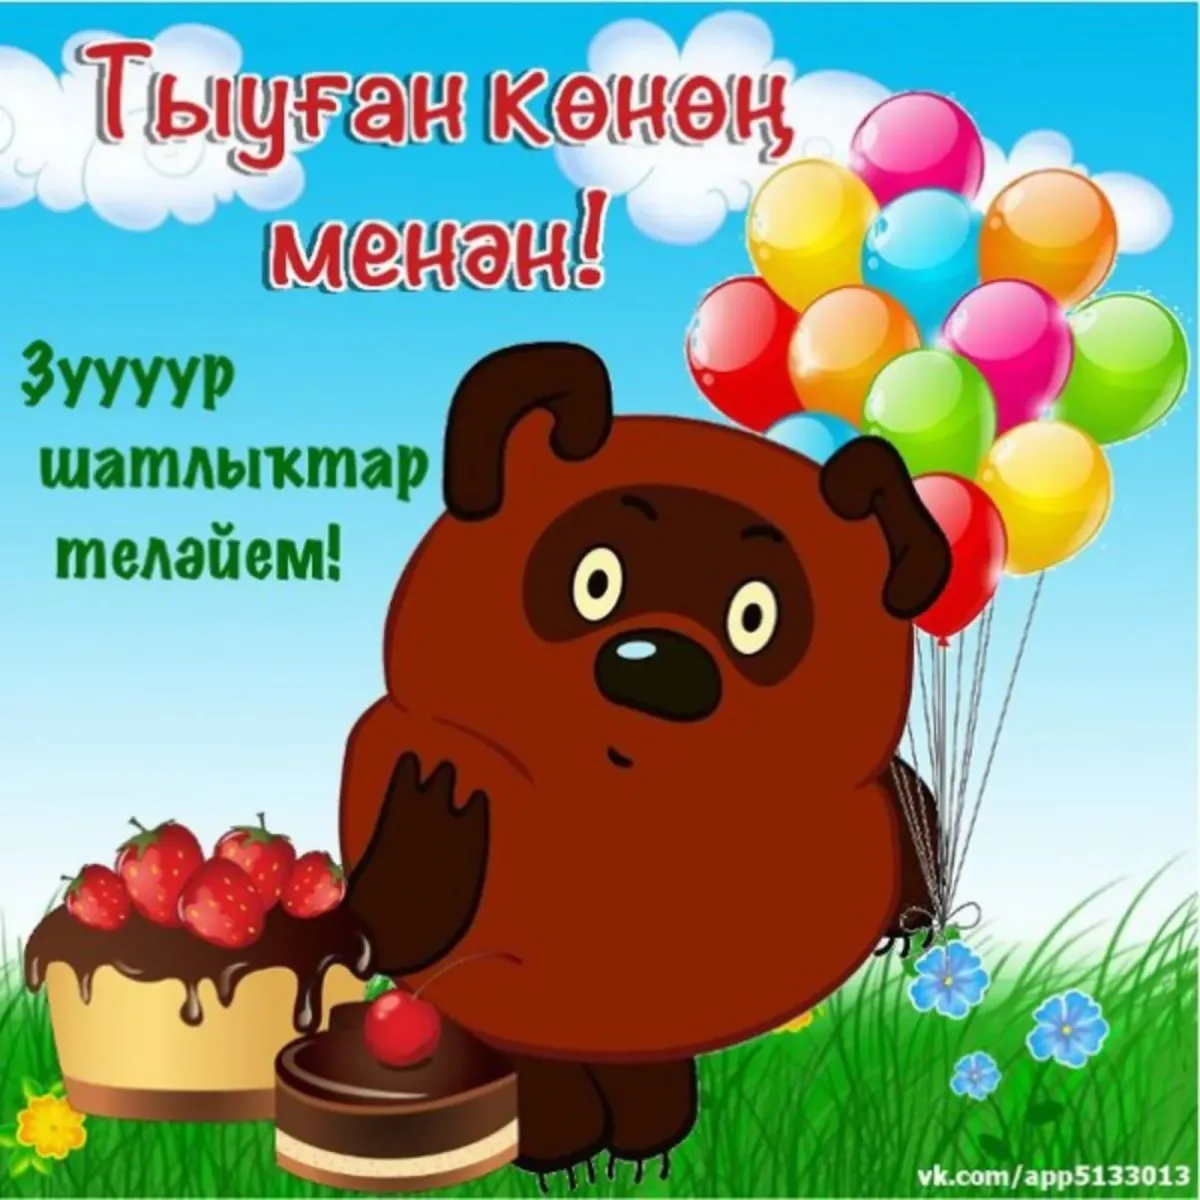 Поздравления с днём рождения на башкирском языке. Поздравления с днём рождения мужчине на башкирском языке. Поздравление с юбилеем на башкирском языке. Башкирские пожелания на день рождения